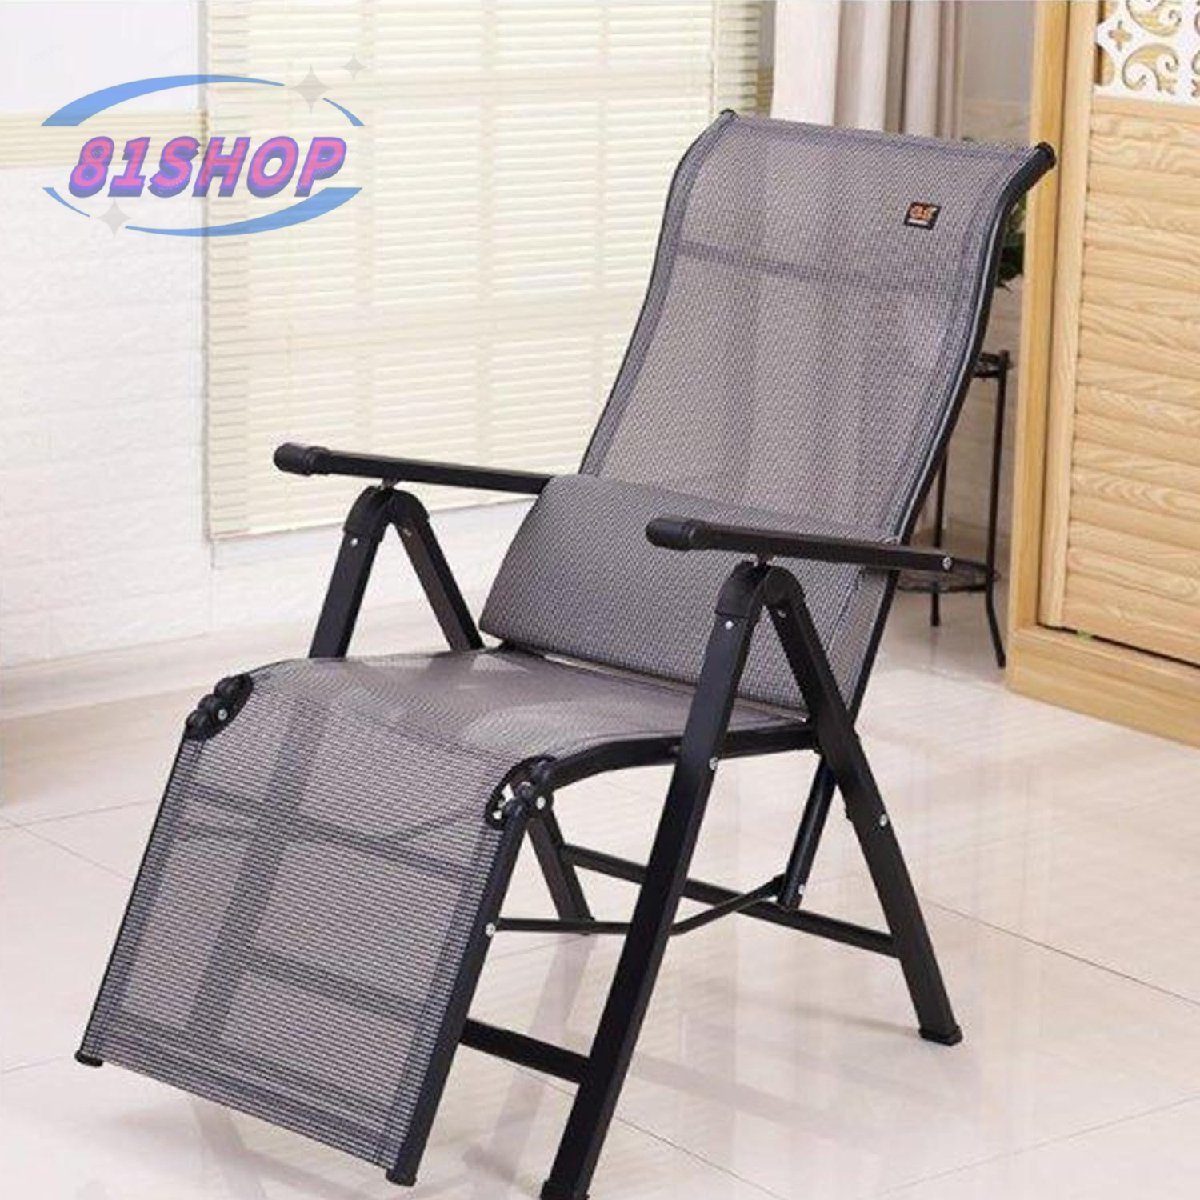 81SHOP Кресло для отдыха, кресло для сна, шезлонг, офисный стул для обеденного перерыва, домашний стул, складной пляжный стул, Изделия ручной работы, мебель, Стул, Стул, стул